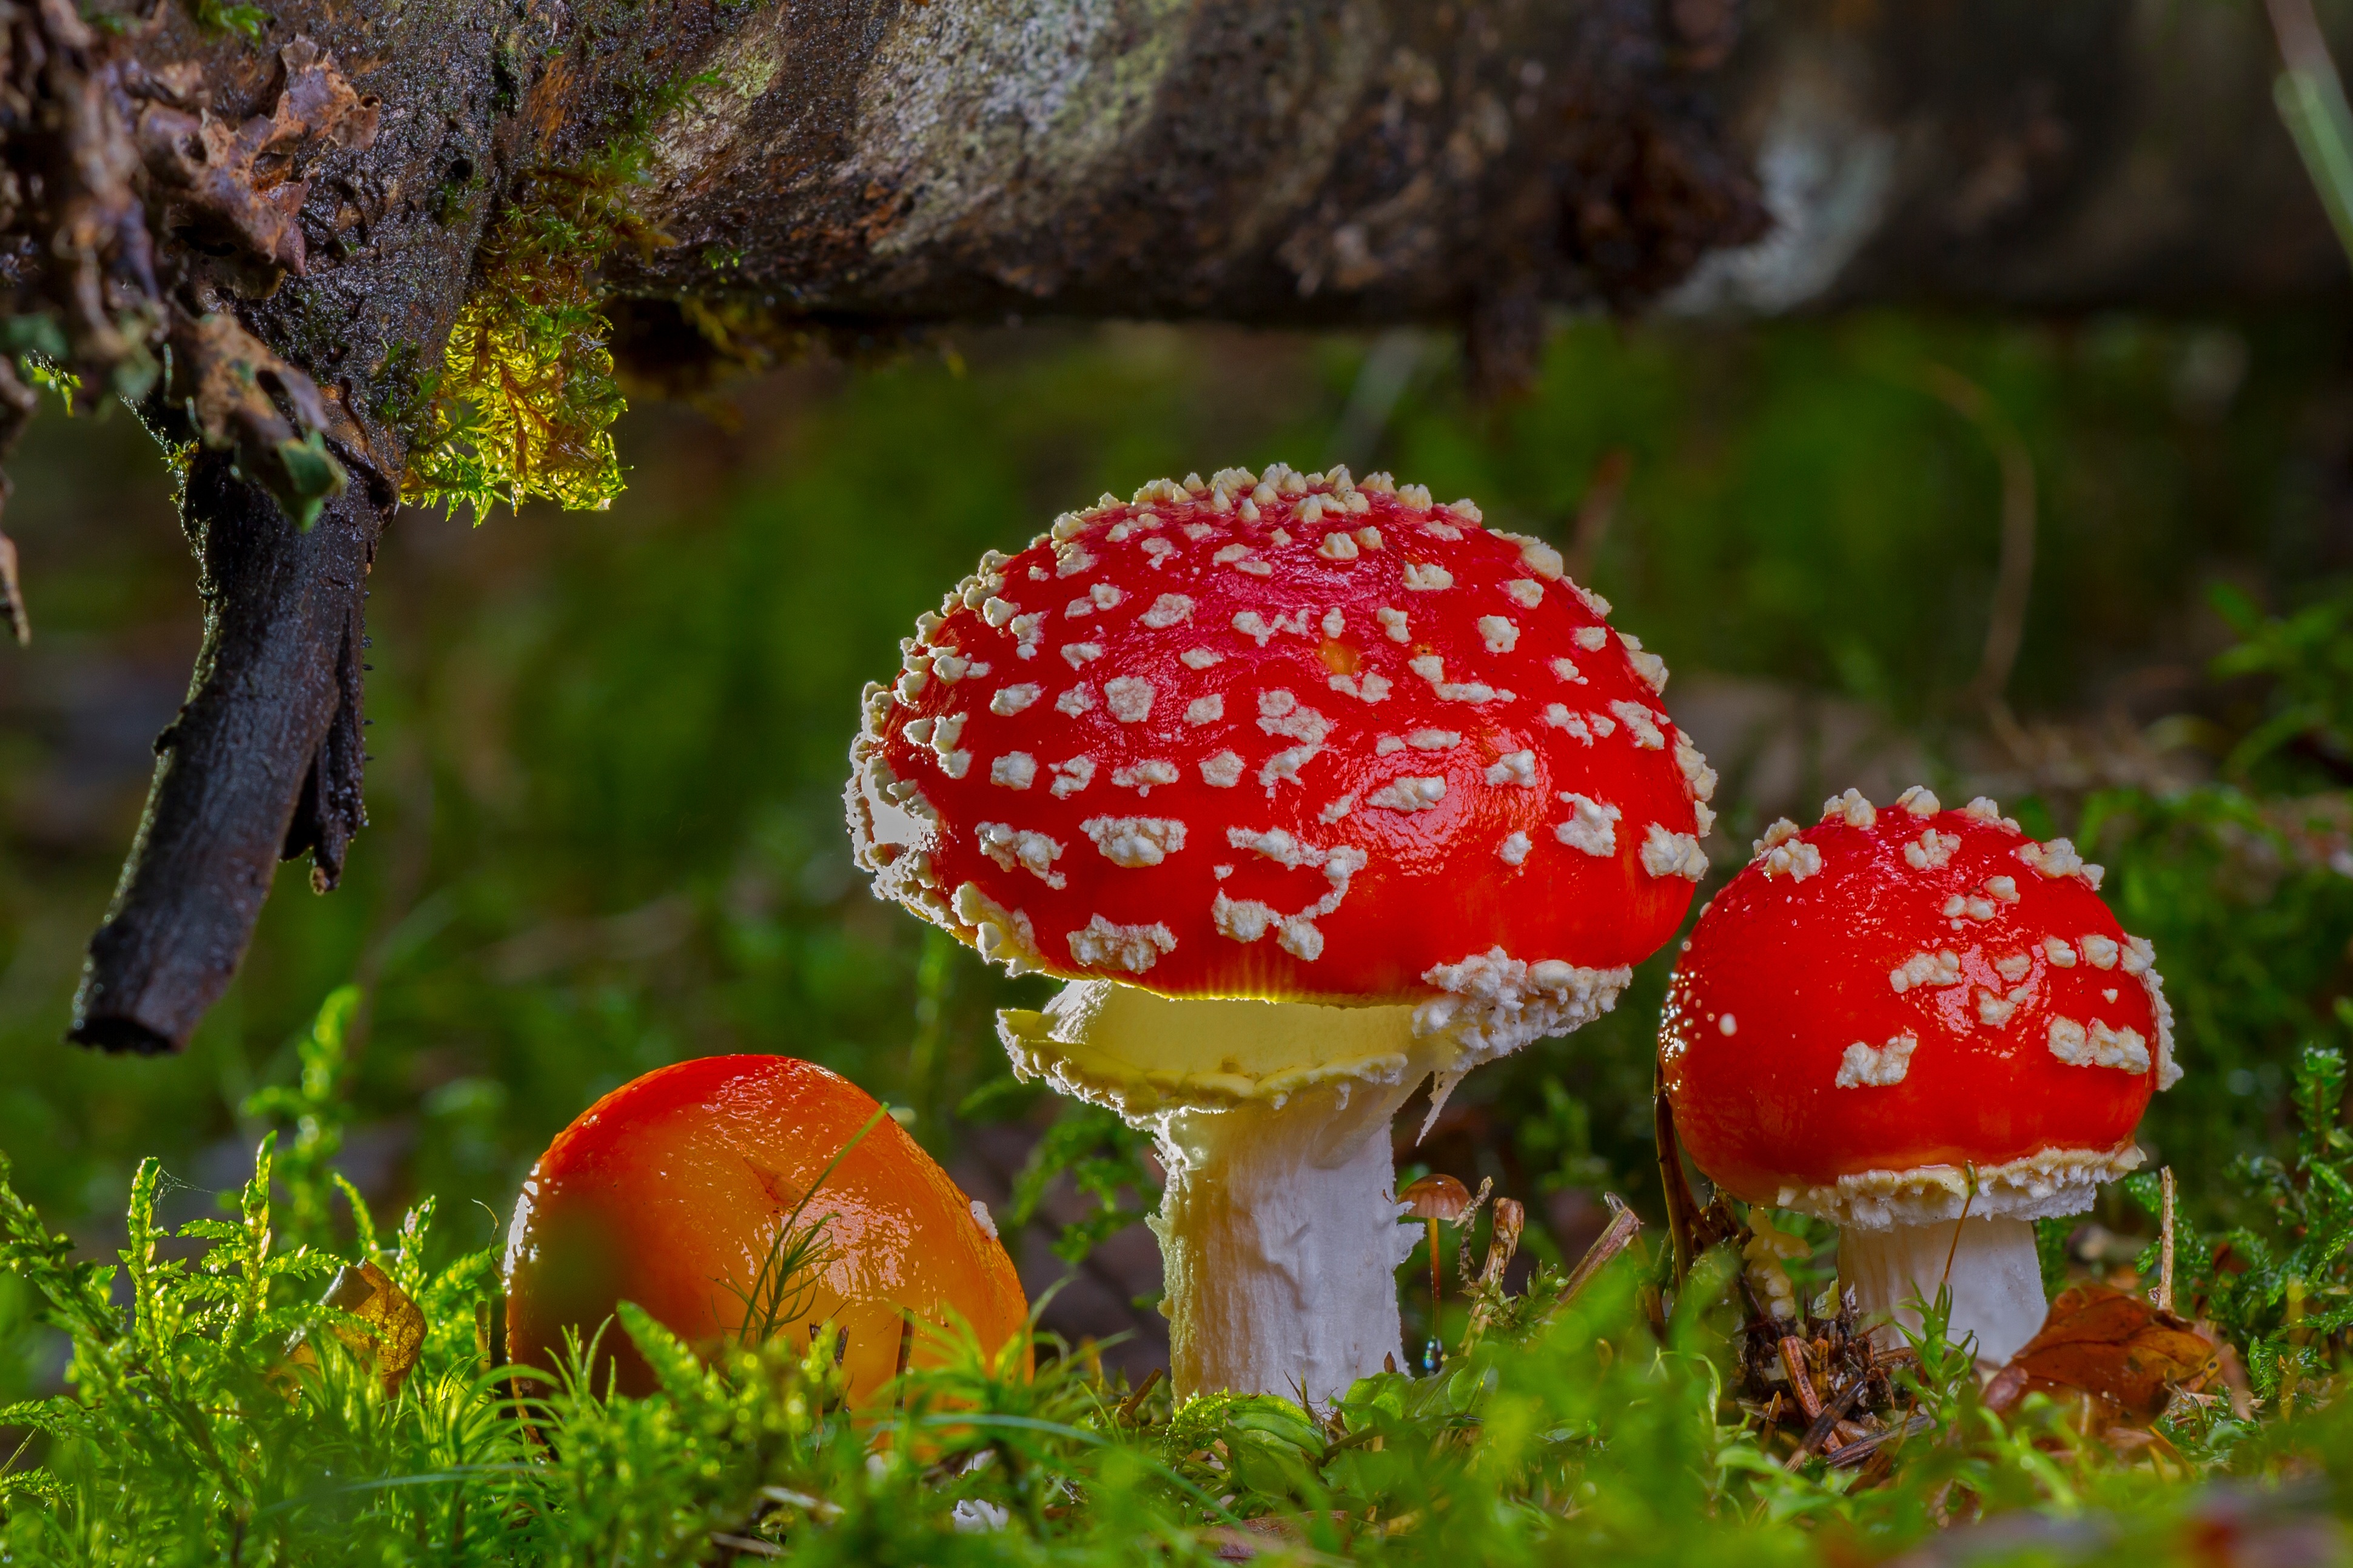 Мухомор красный (amanita muscaria): употребление, фото, описание и лечебные свойства гриба